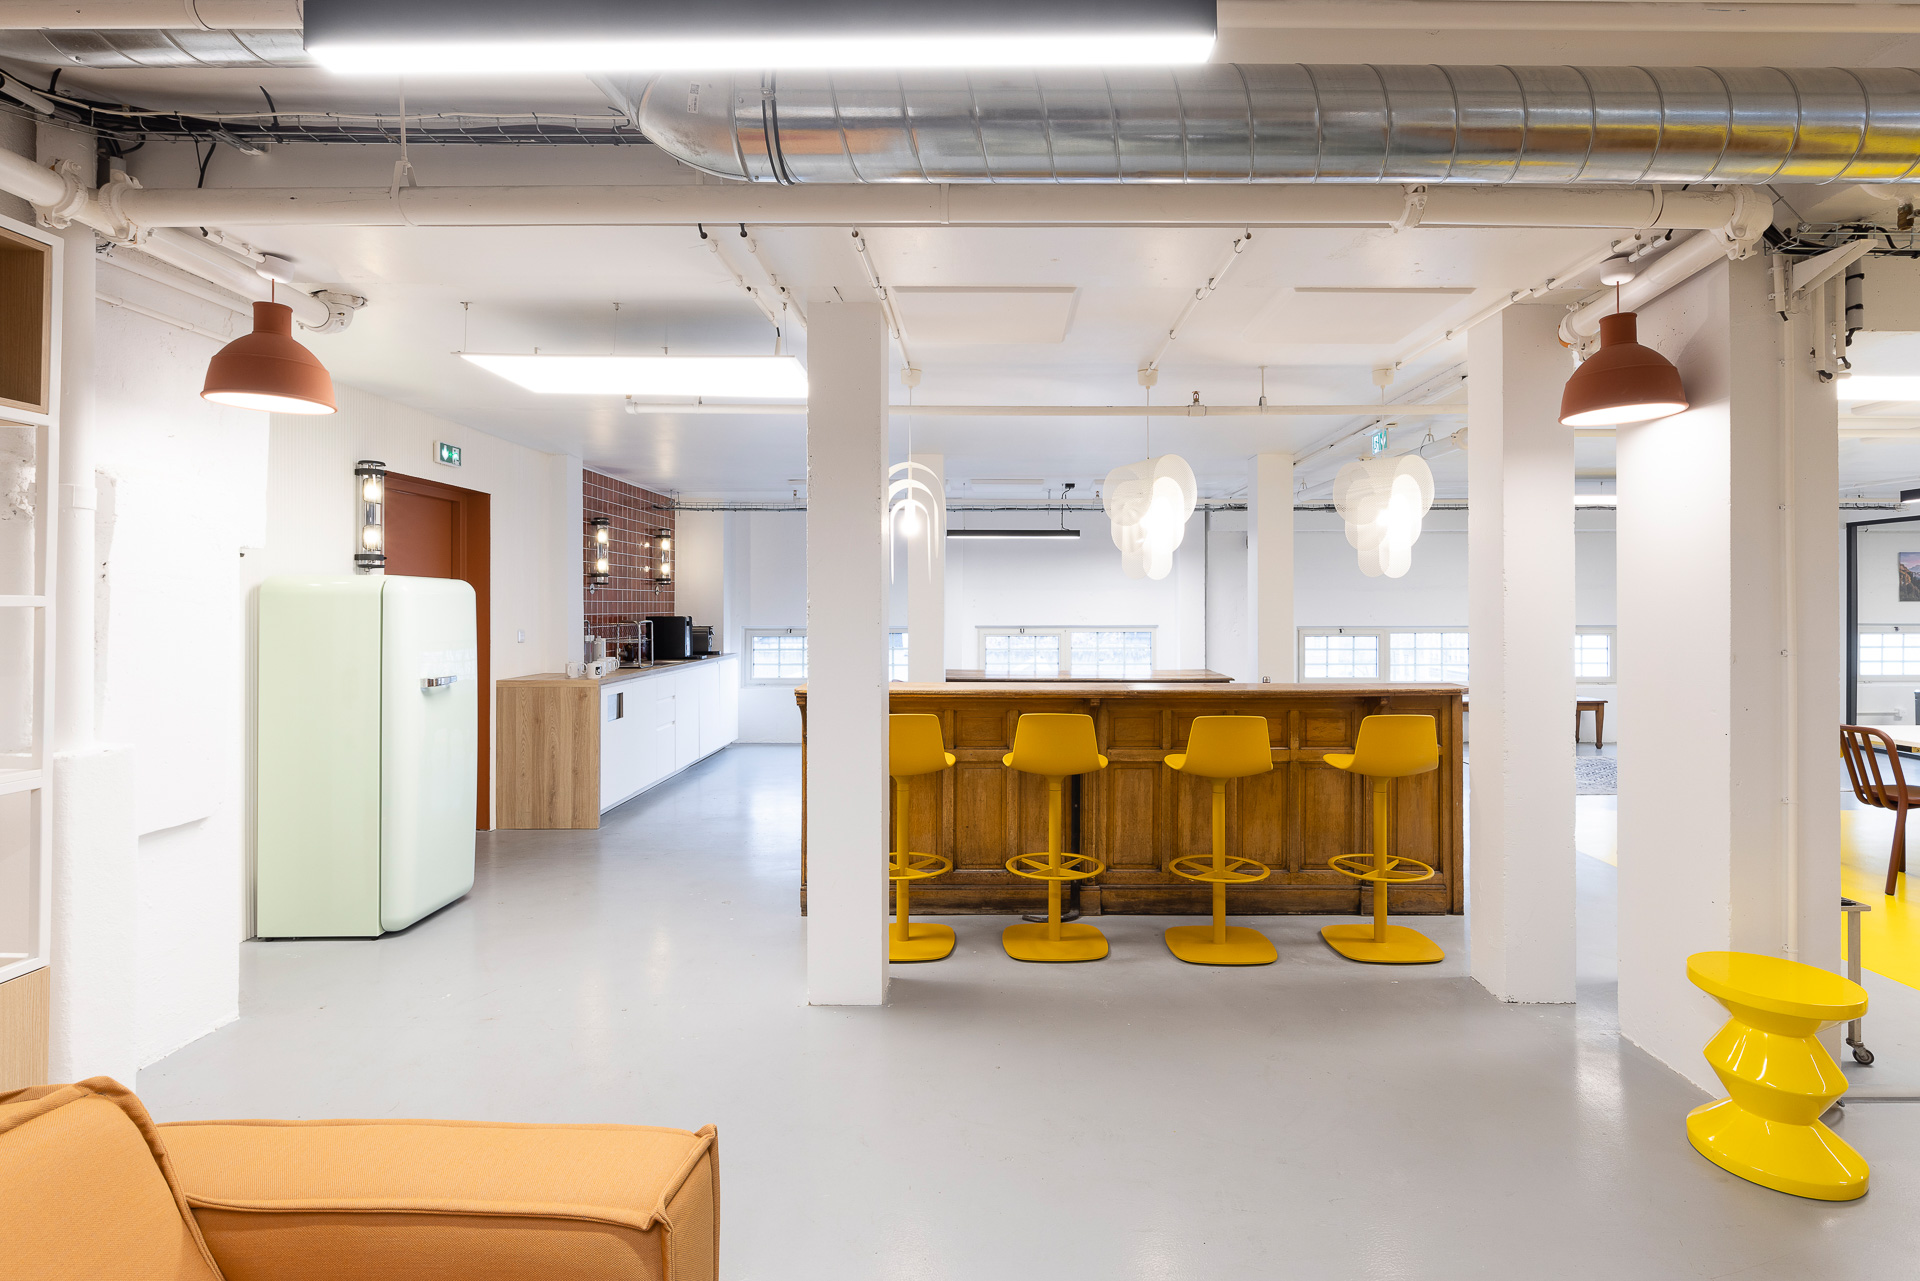 🔥 Aménagement d'une salle de pause d'entreprise alliant modernité et charme de l'ancien 📸 @alexispaoli